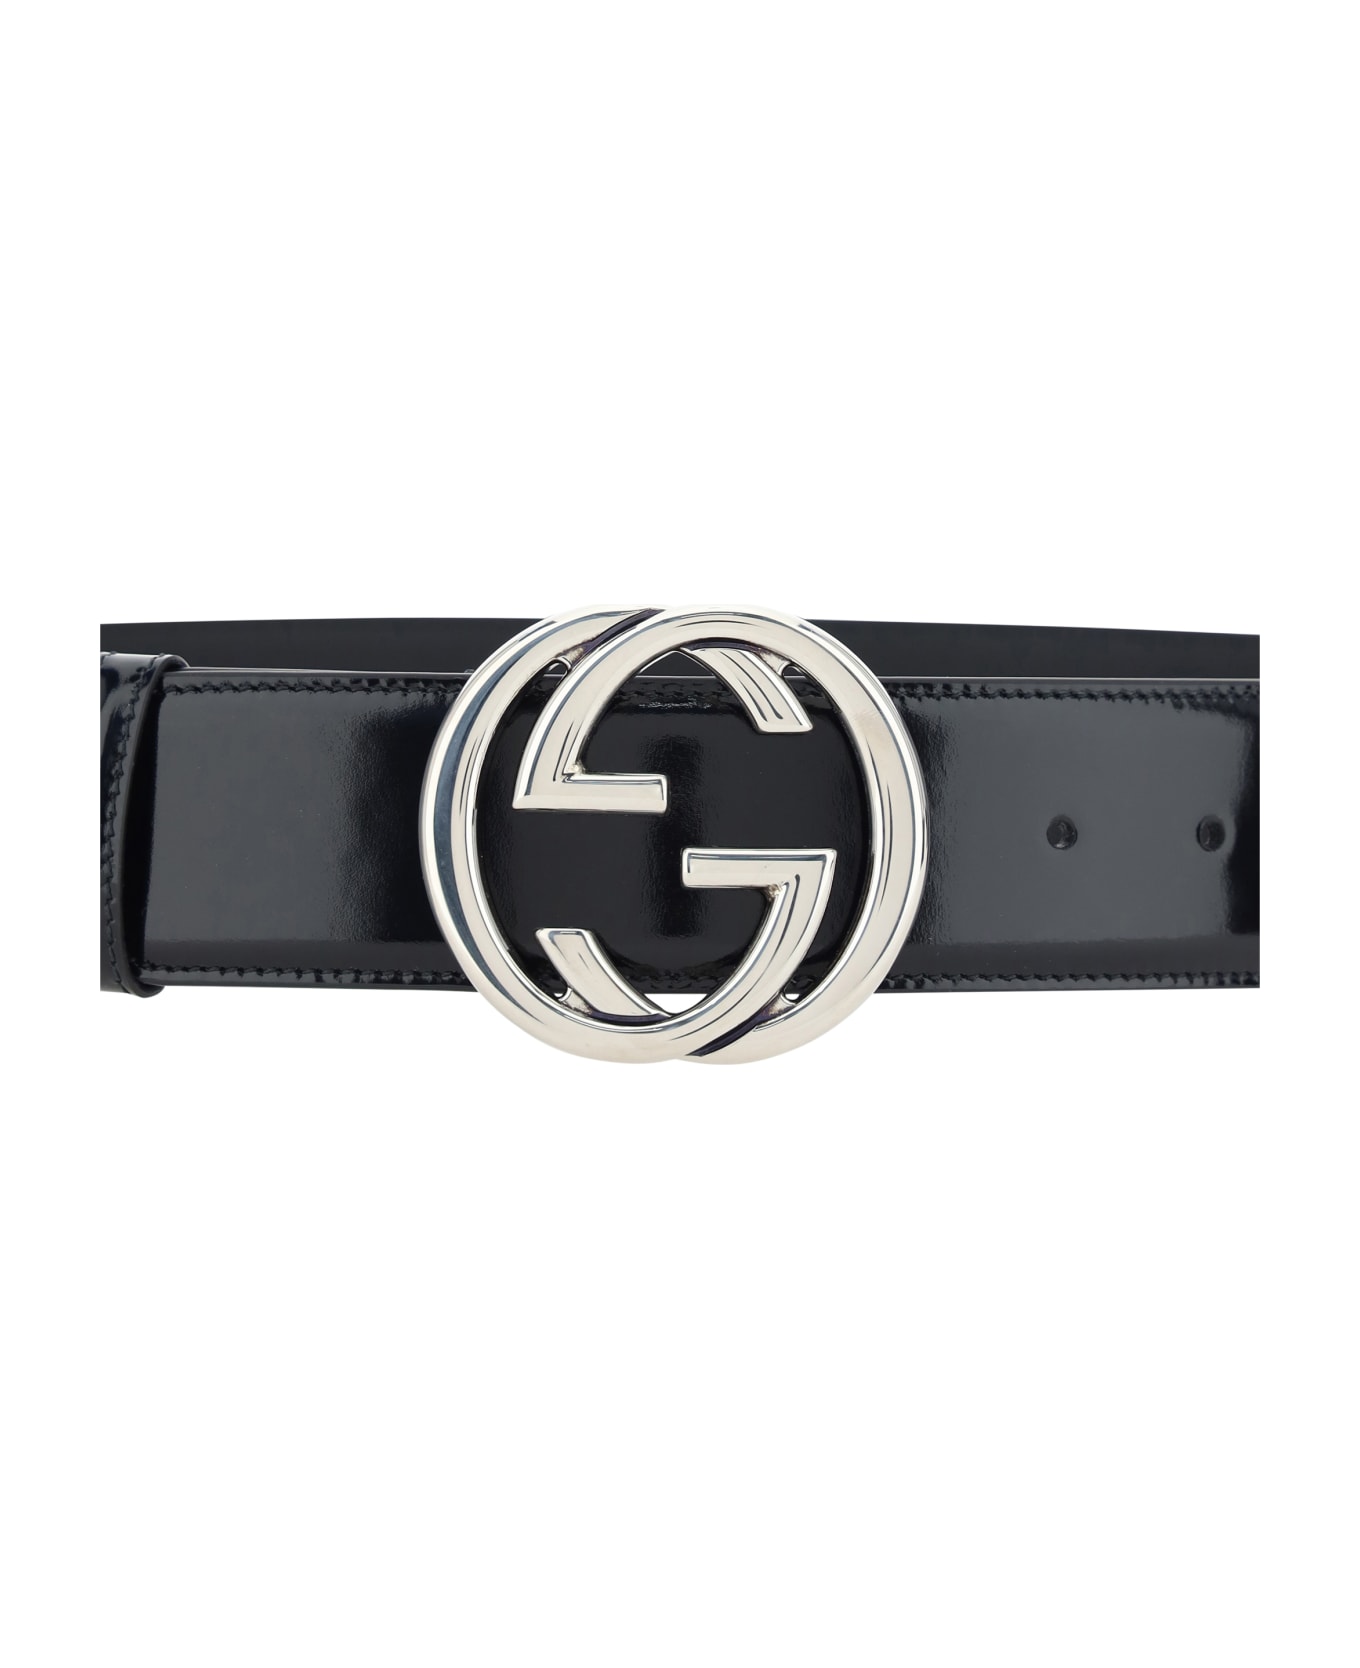 Gucci Belt - Black ベルト